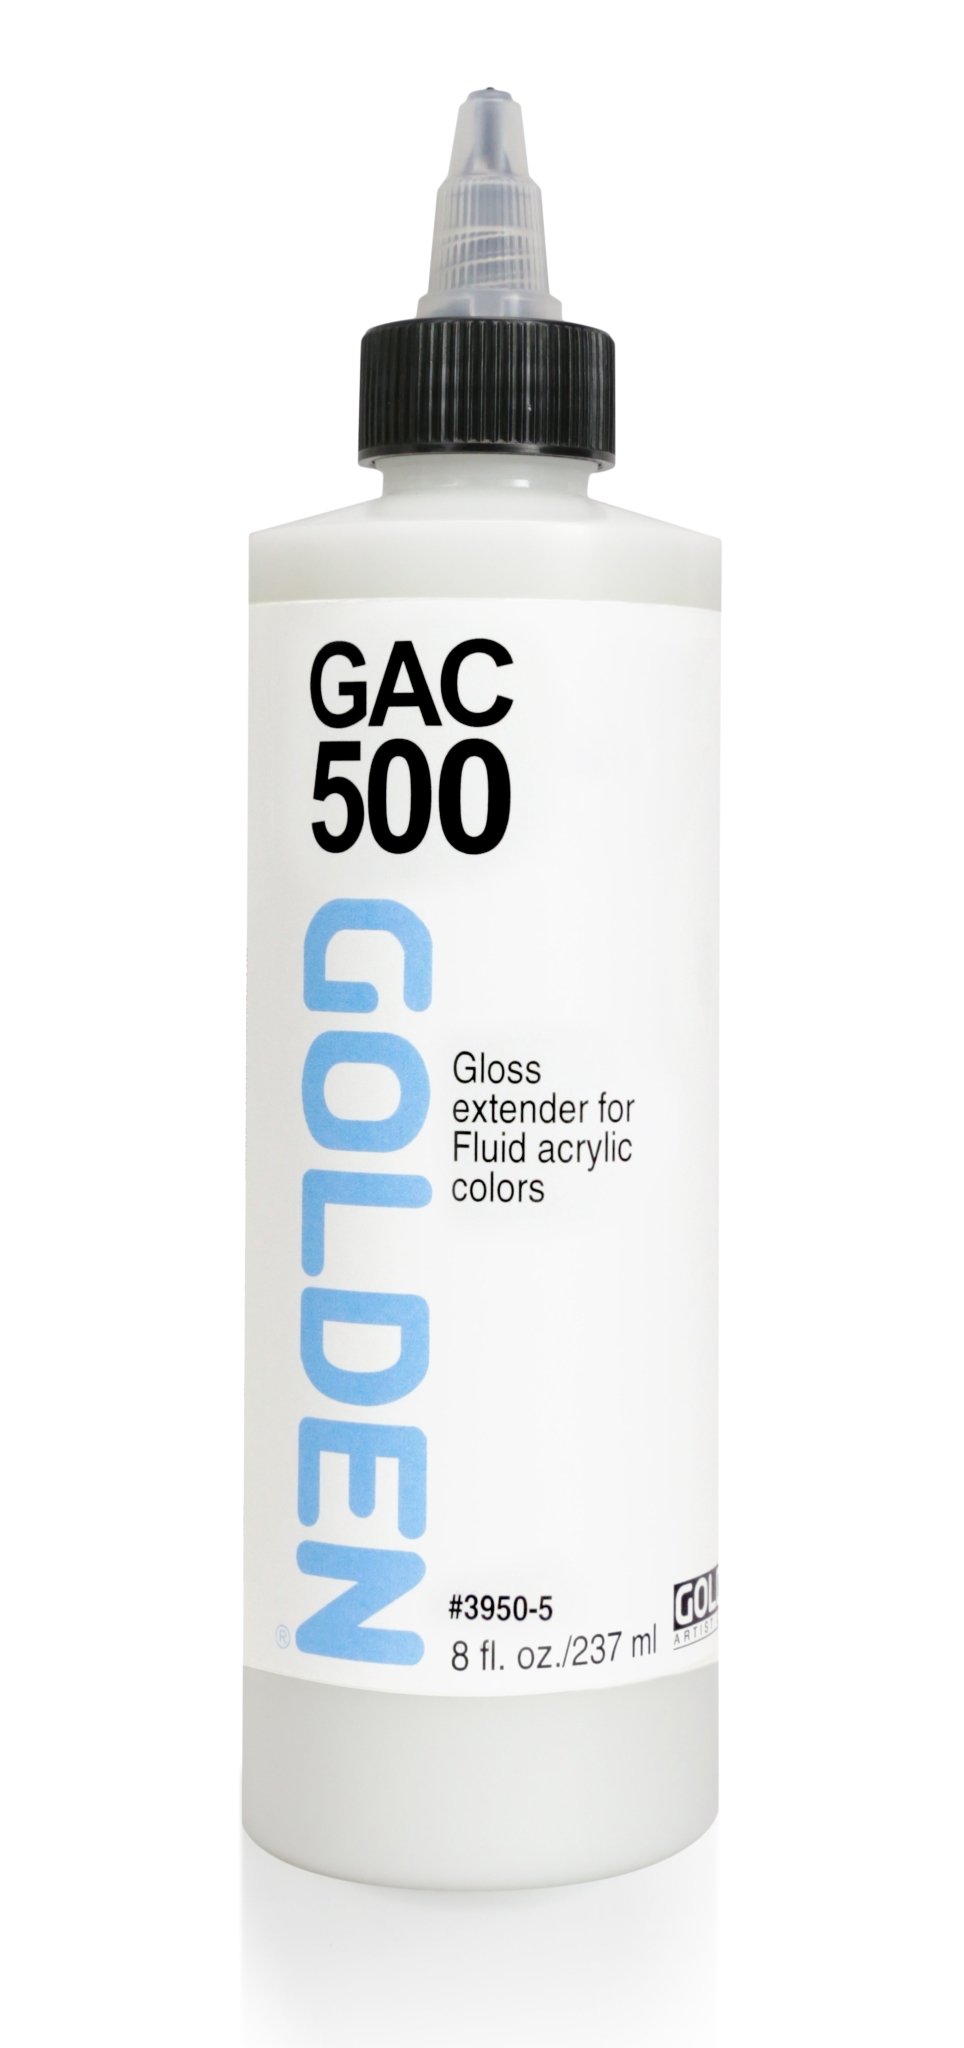 Golden GAC 500 Extends Fluid Acrylics 237ml - theartshop.com.au